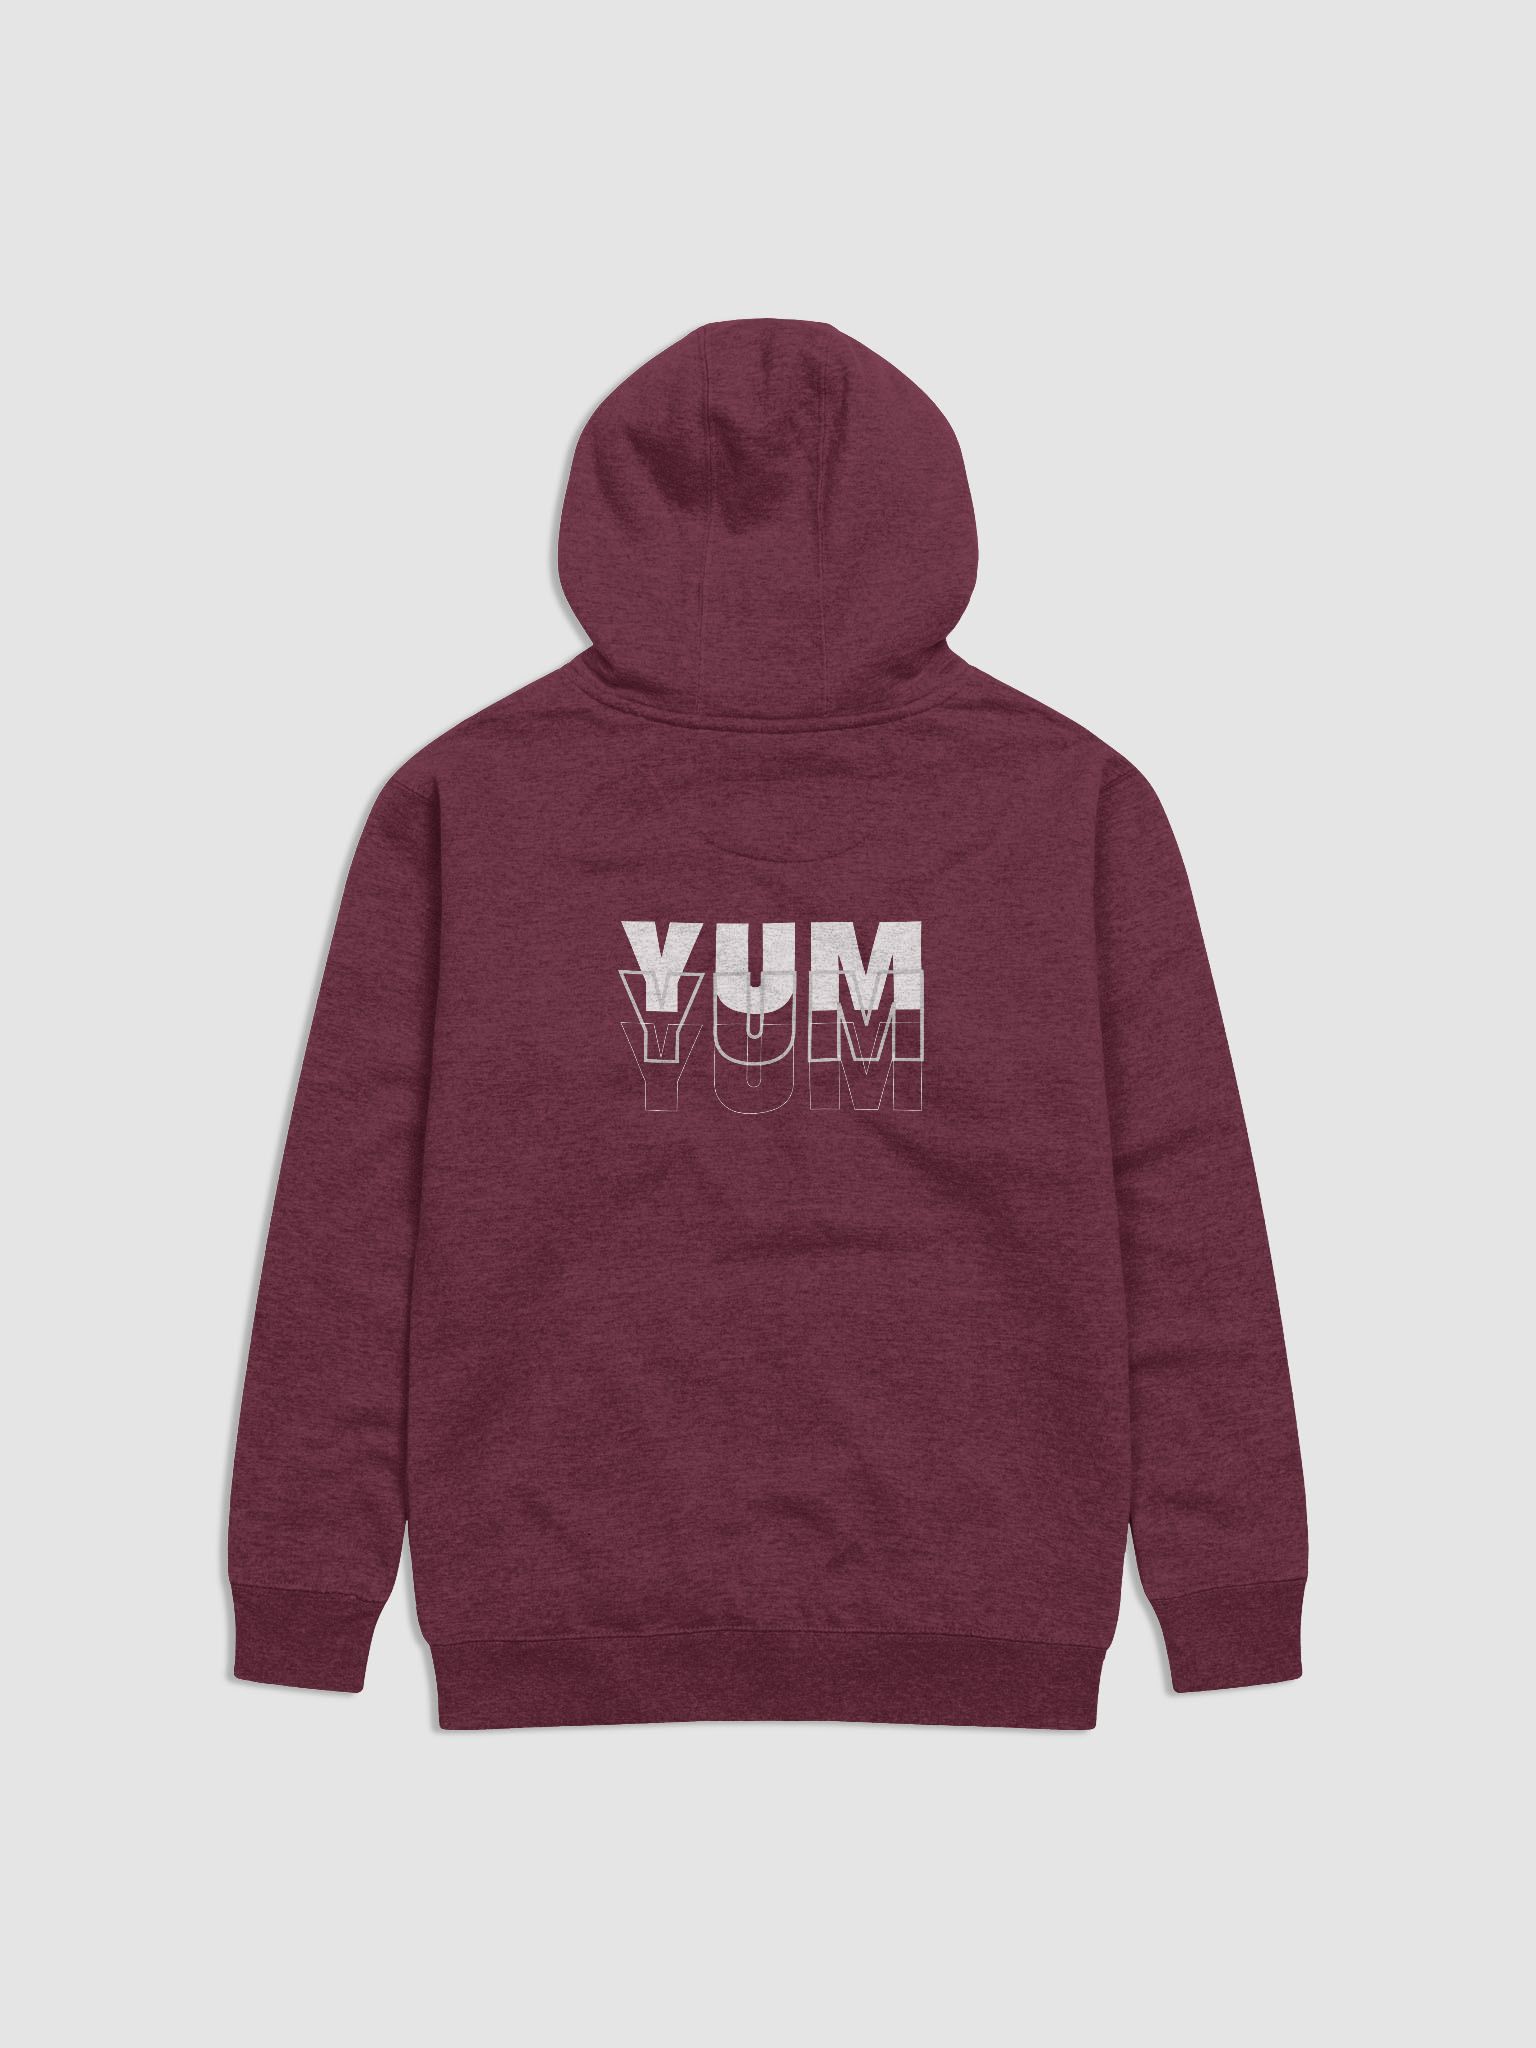 yum yum hoodie